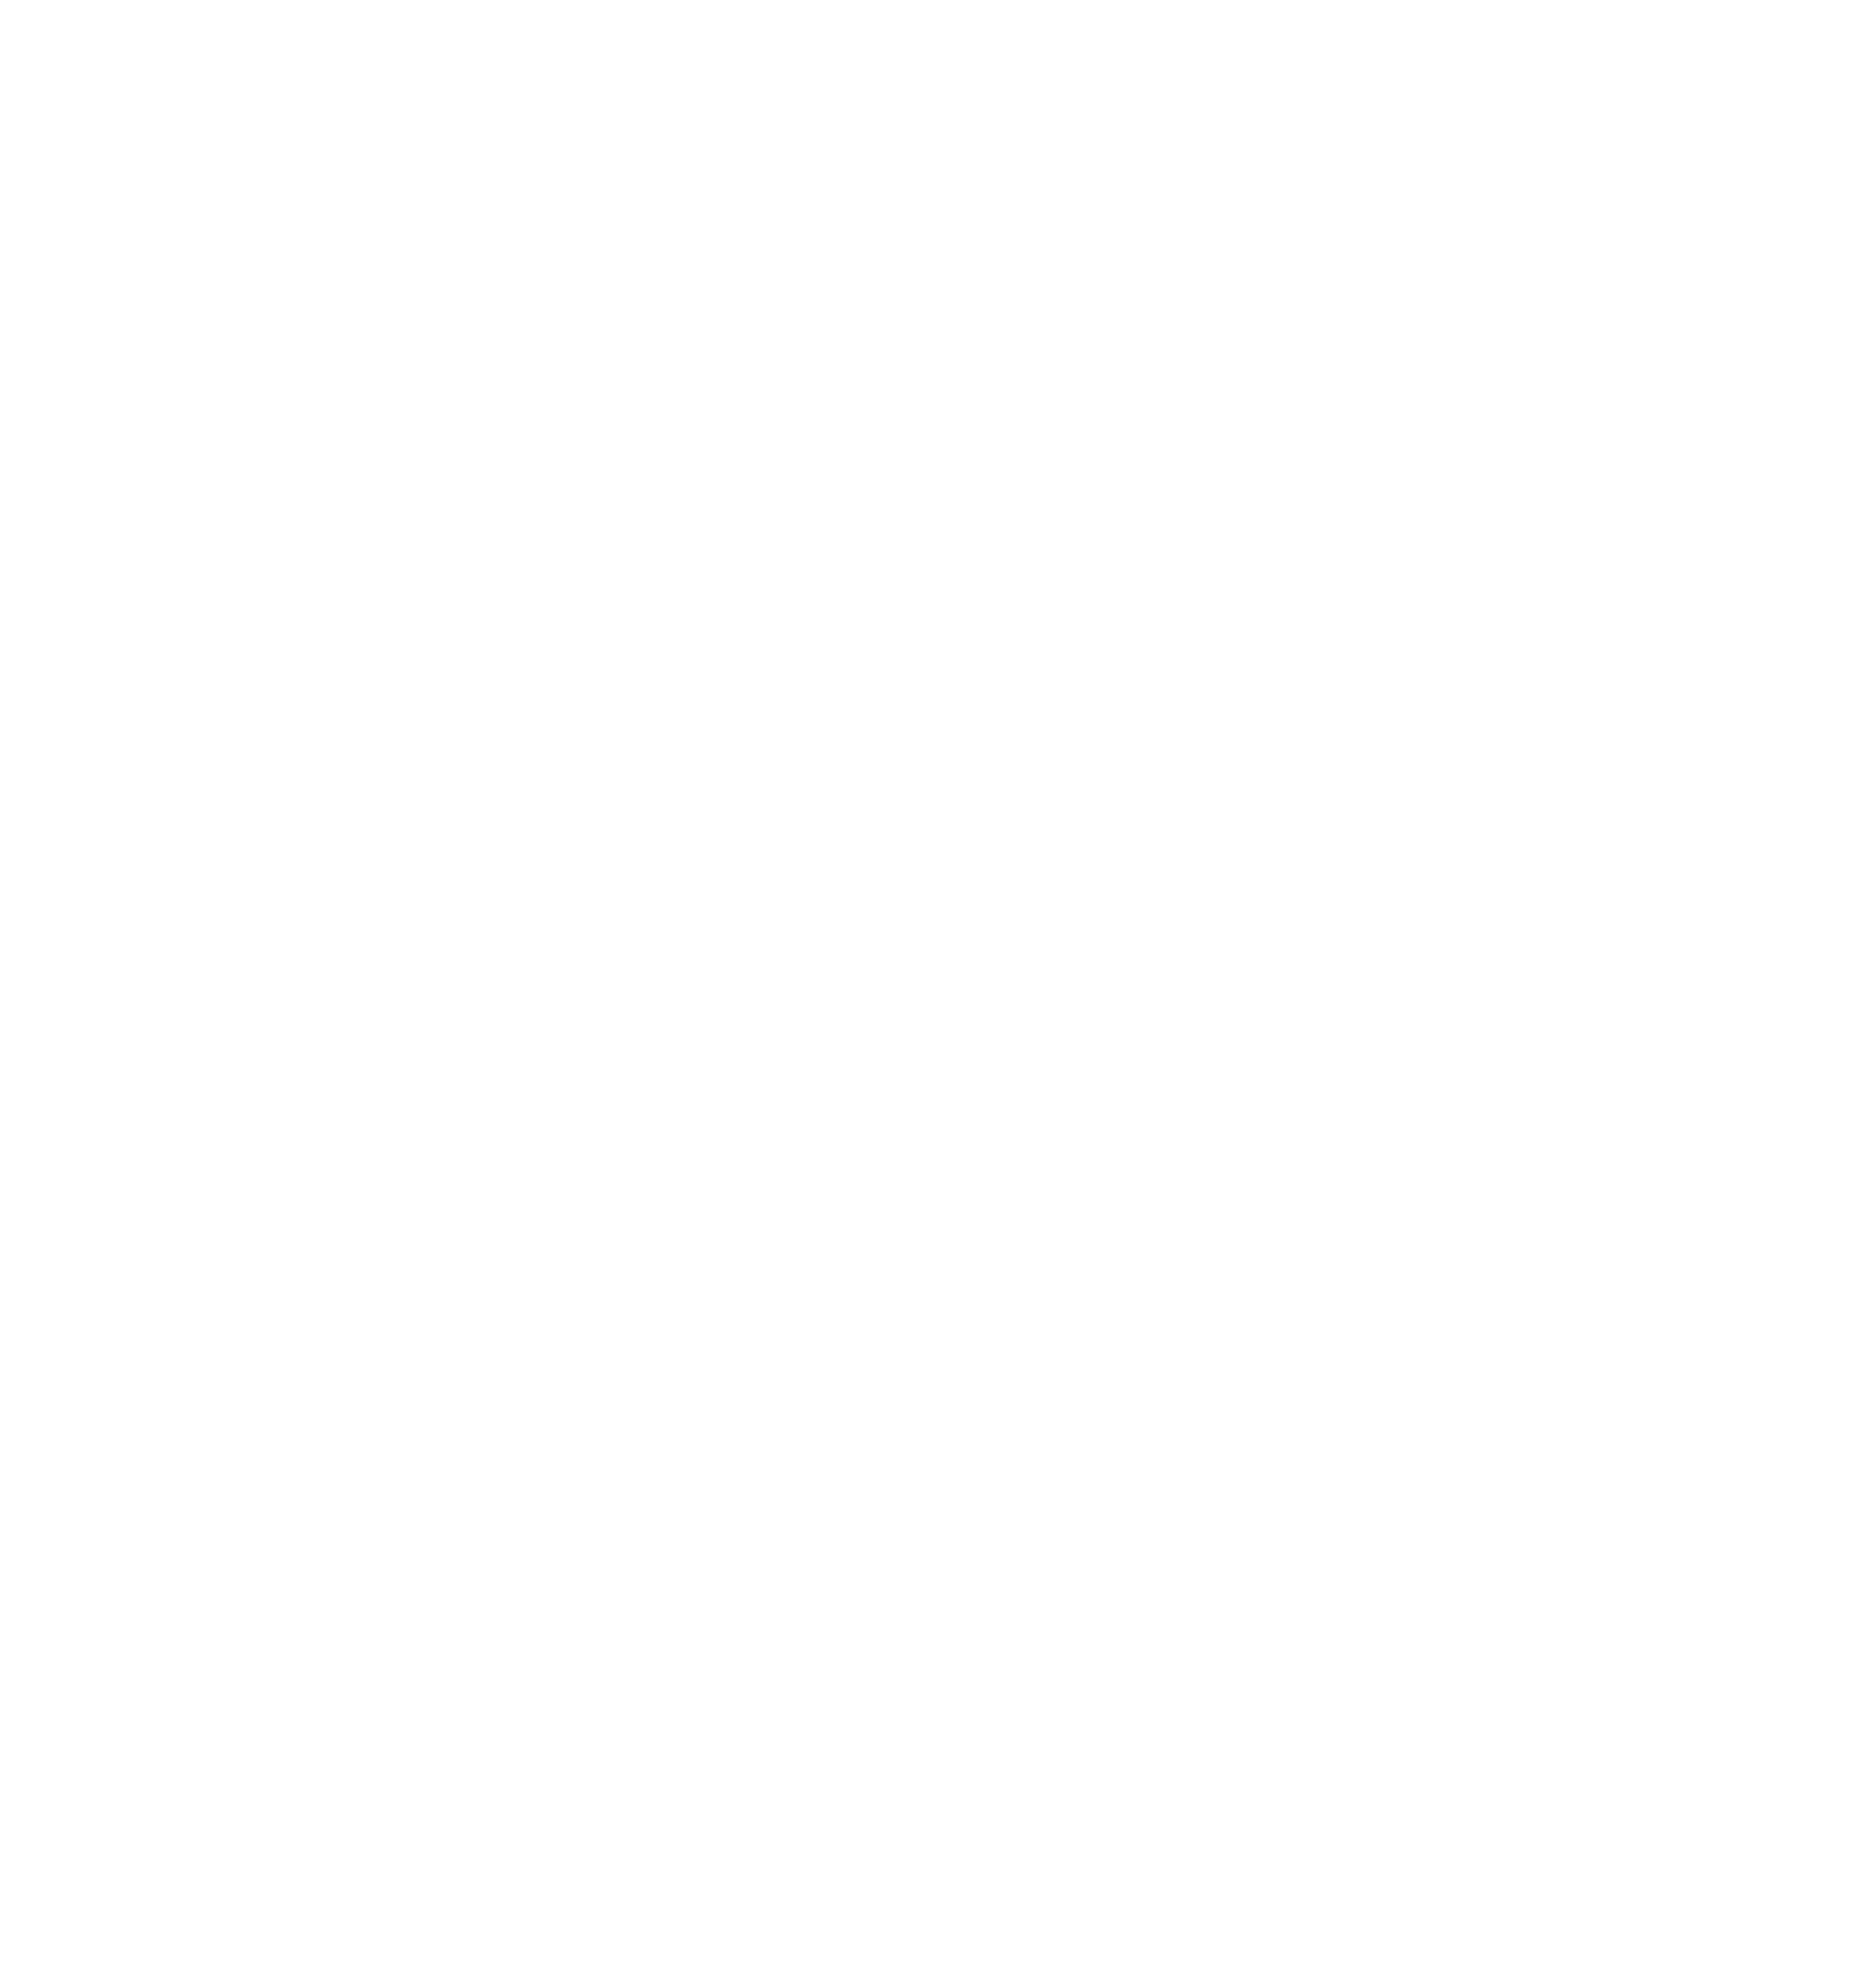 FMD